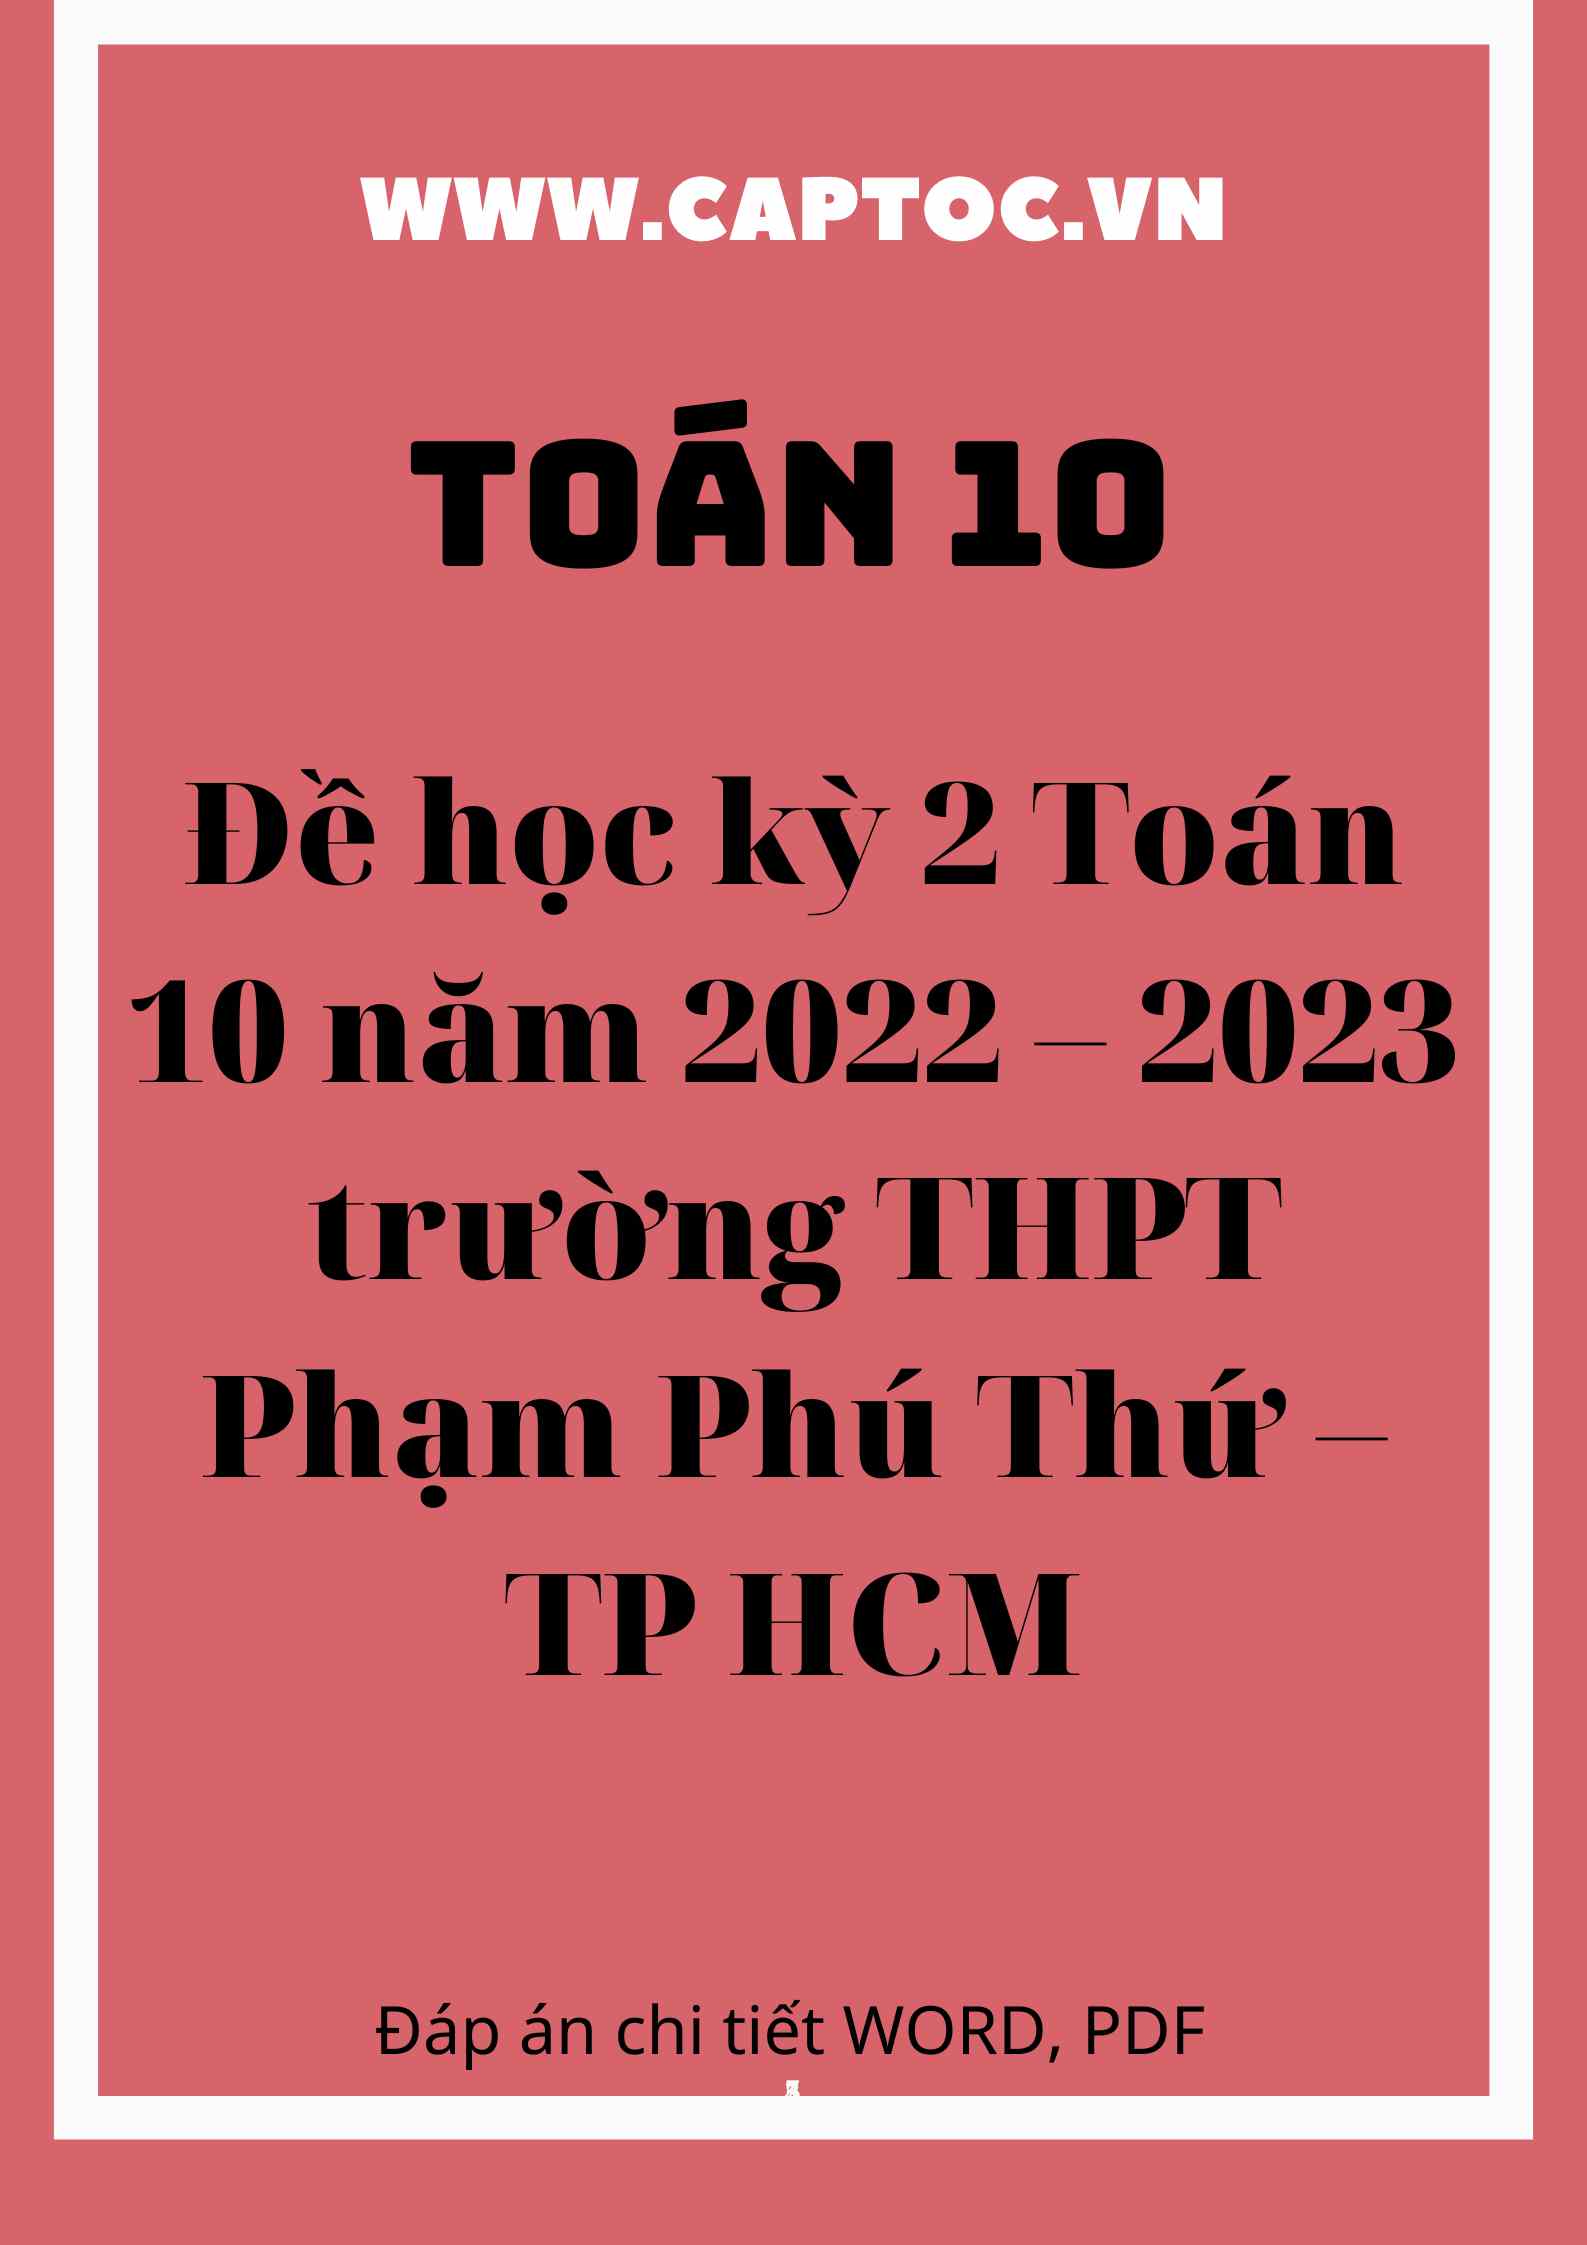 Đề học kỳ 2 Toán 10 năm 2022 – 2023 trường THPT Phạm Phú Thứ – TP HCM